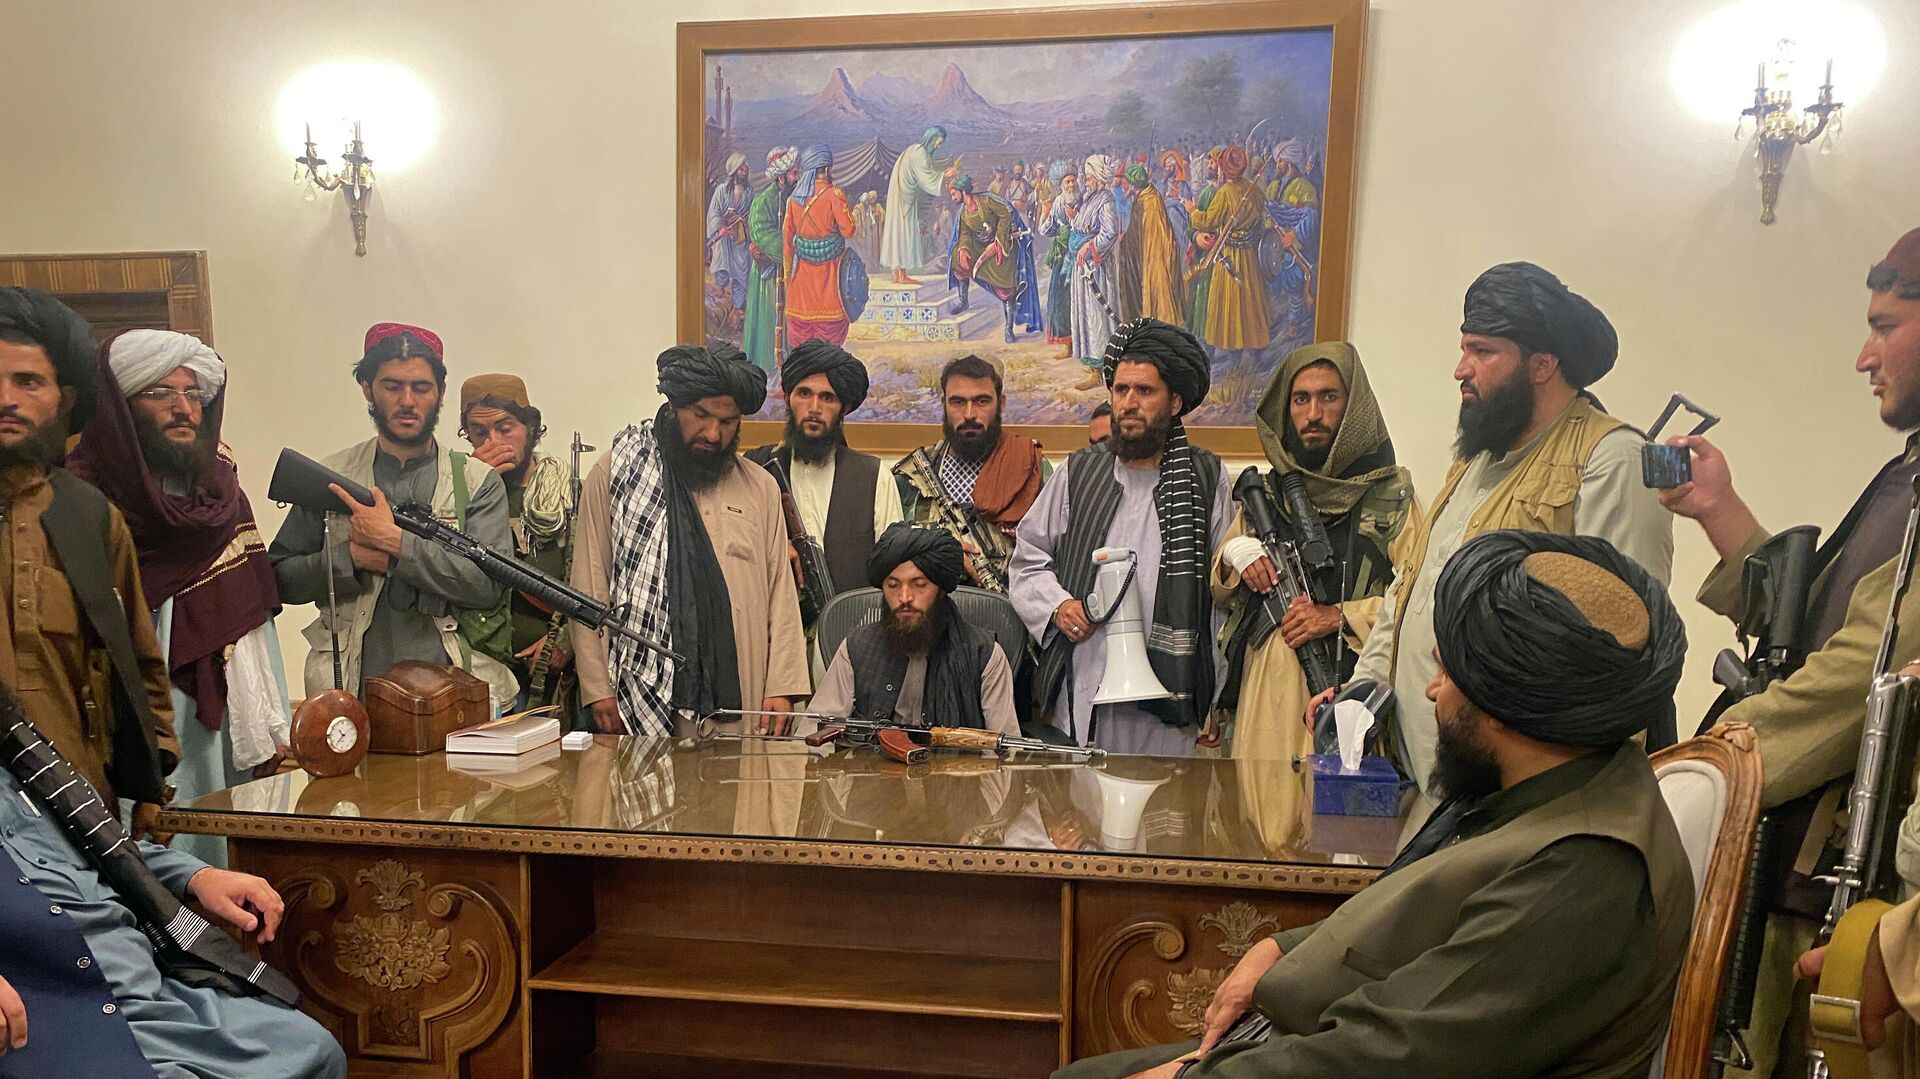 Талибани након уласка у председничку палату у Кабулу - Sputnik Србија, 1920, 19.08.2021